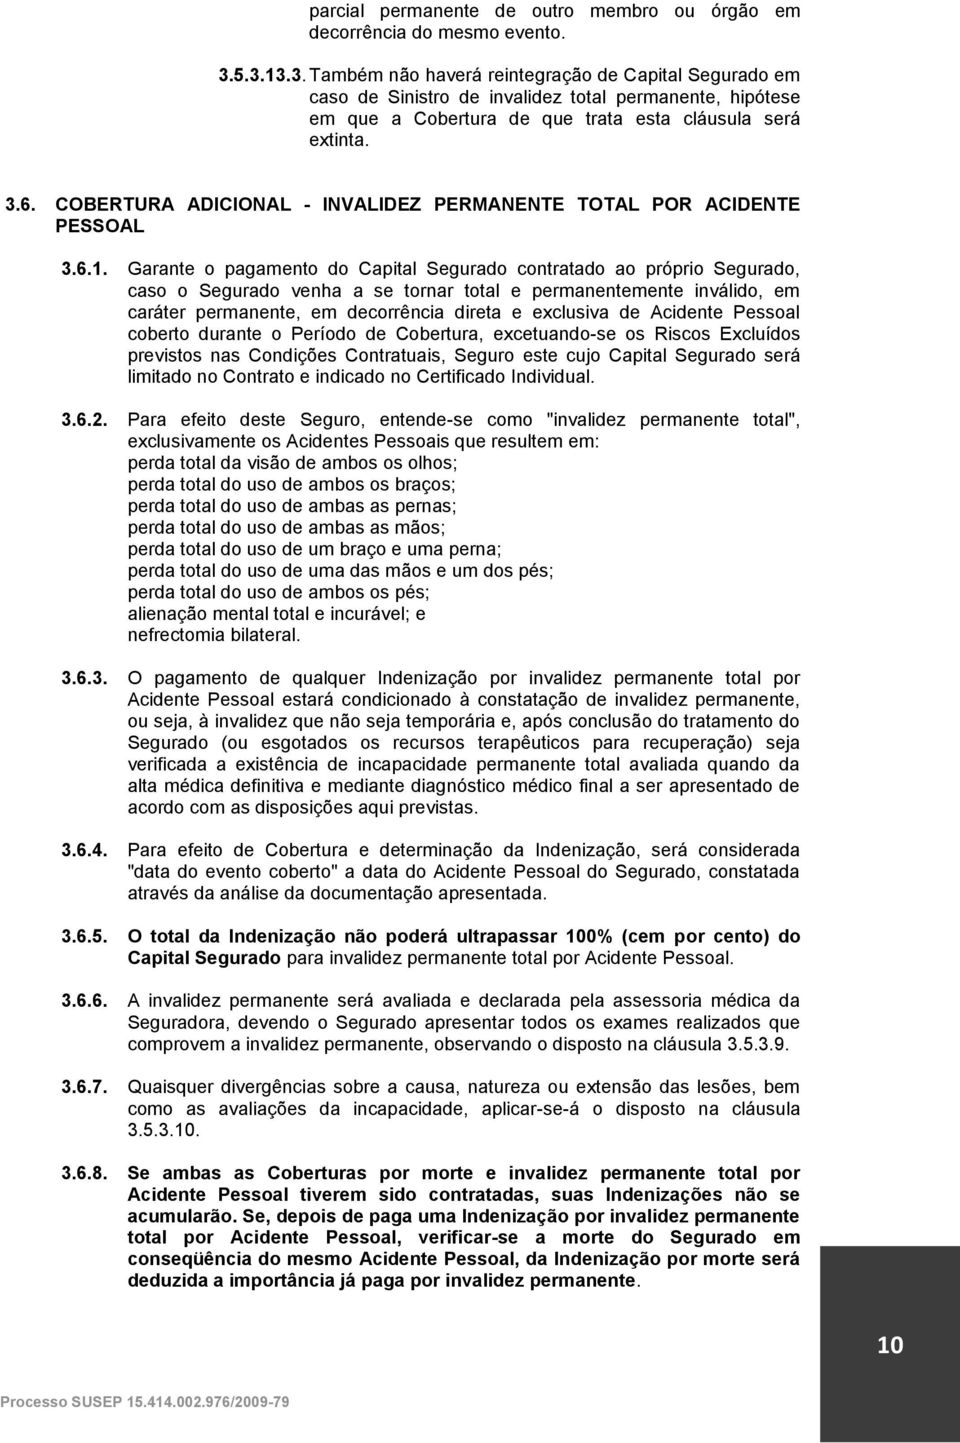 COBERTURA ADICIONAL - INVALIDEZ PERMANENTE TOTAL POR ACIDENTE PESSOAL 3.6.1.